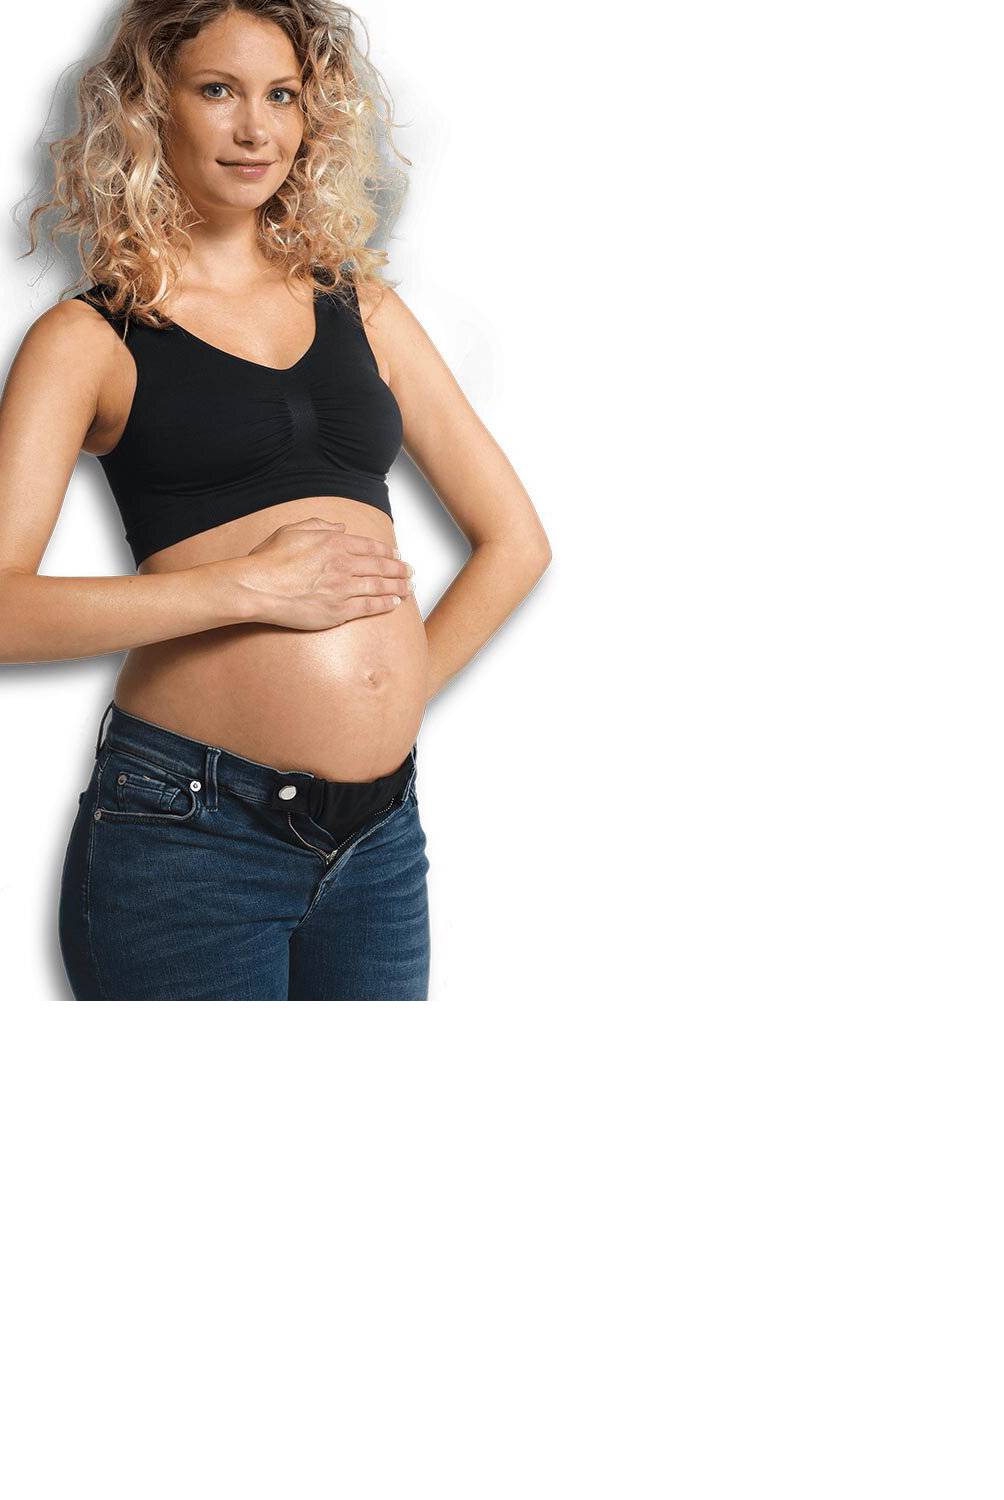 CARRIWELL - Extensor Maternal Pantalon Flexi Belt